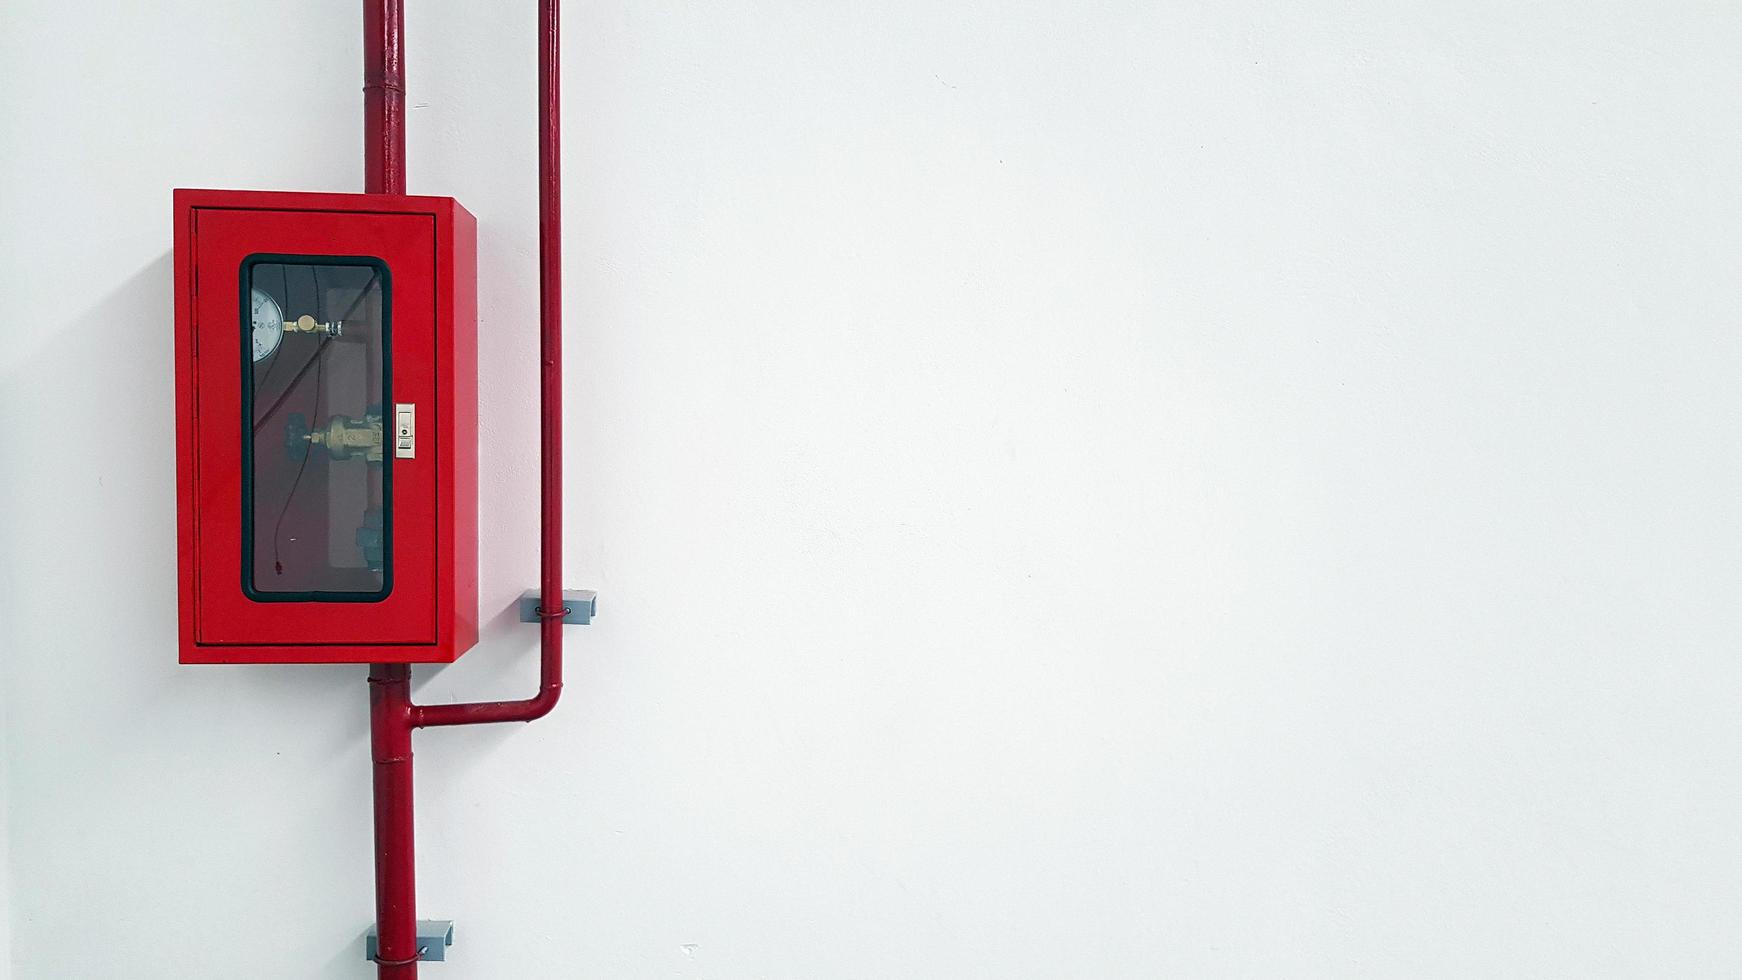 boîte en acier inoxydable rouge contenant pour l'ouvre-vanne d'eau pour la lutte contre l'incendie avec canalisation d'eau ou tuyau sur mur blanc avec espace de copie à droite. coffre-fort et équipement de protection en cas d'urgence c photo